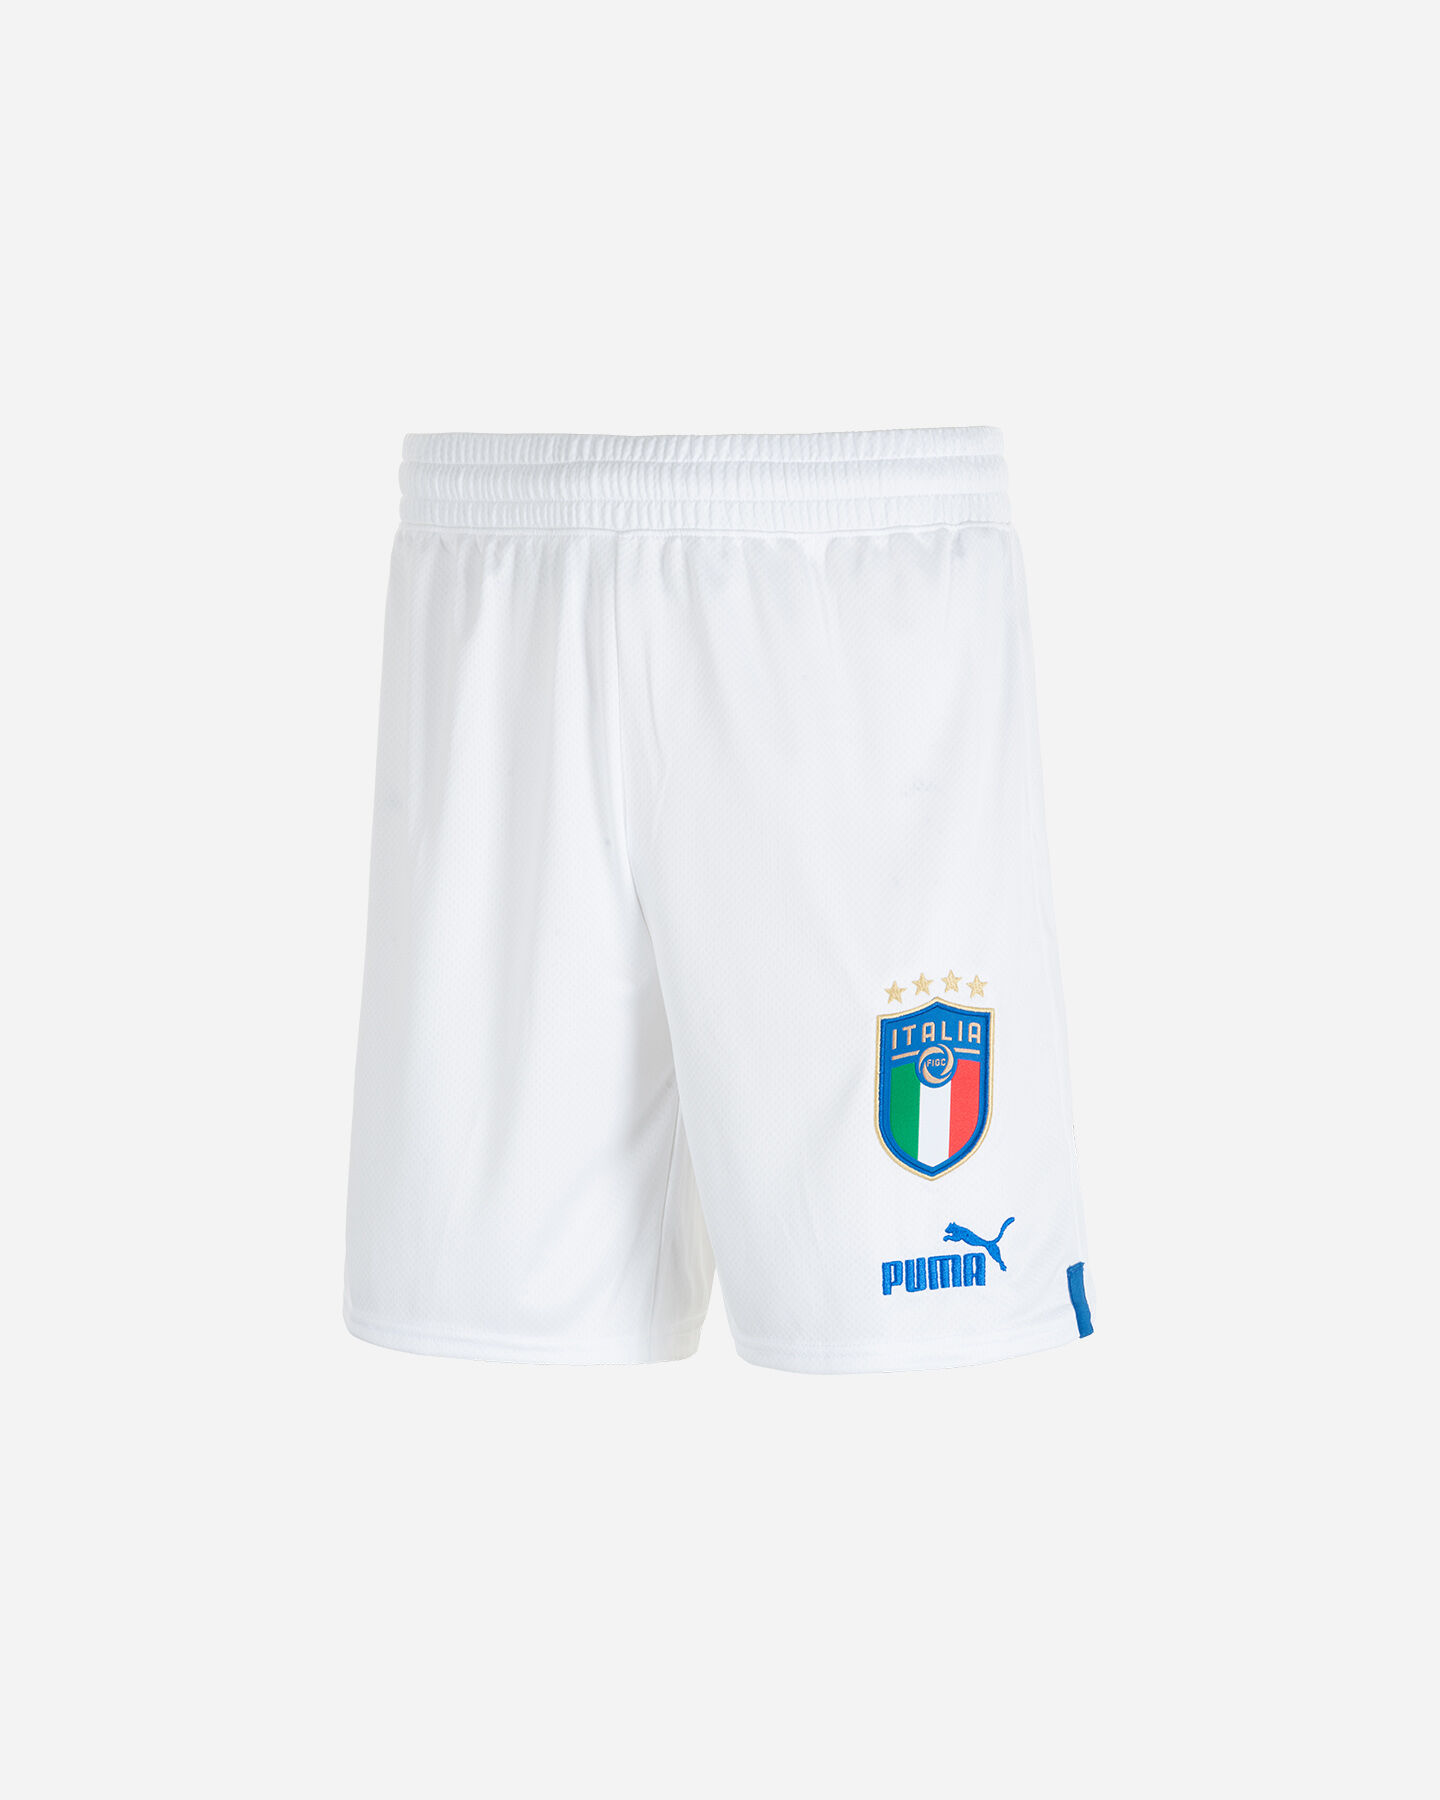  Pantaloncini calcio PUMA ITALIA FIGC 22-23 M S5486809|08|S scatto 0